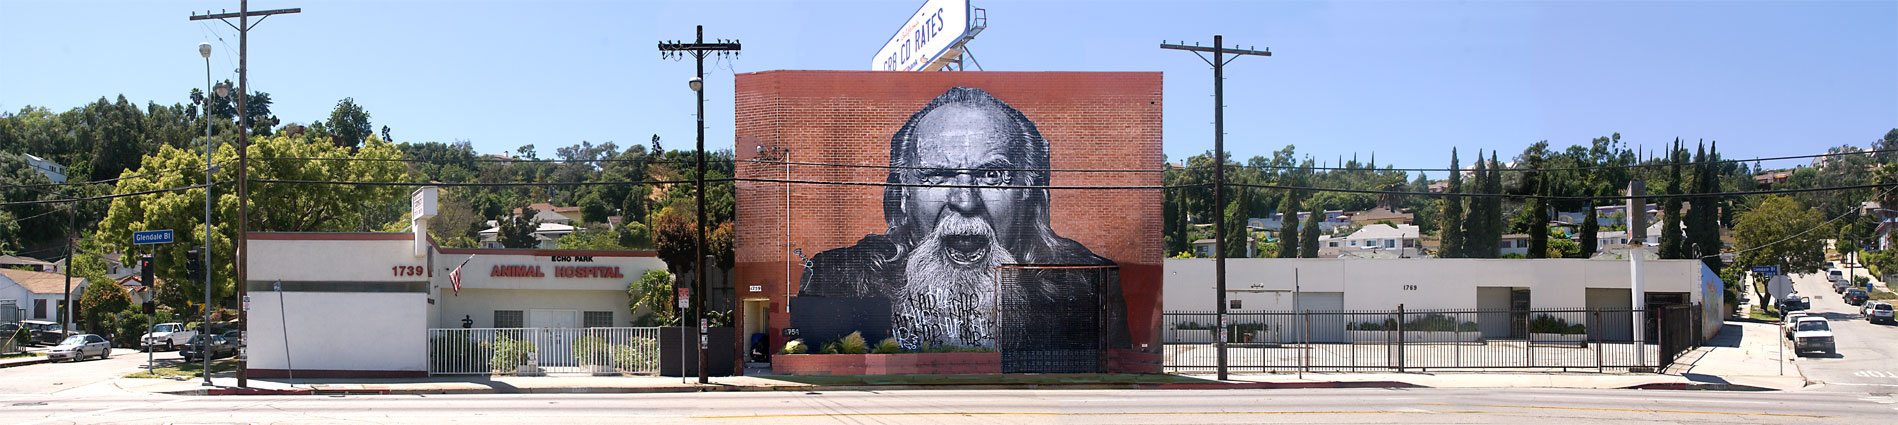 Glendale Boulevard, Los Angeles, 2011